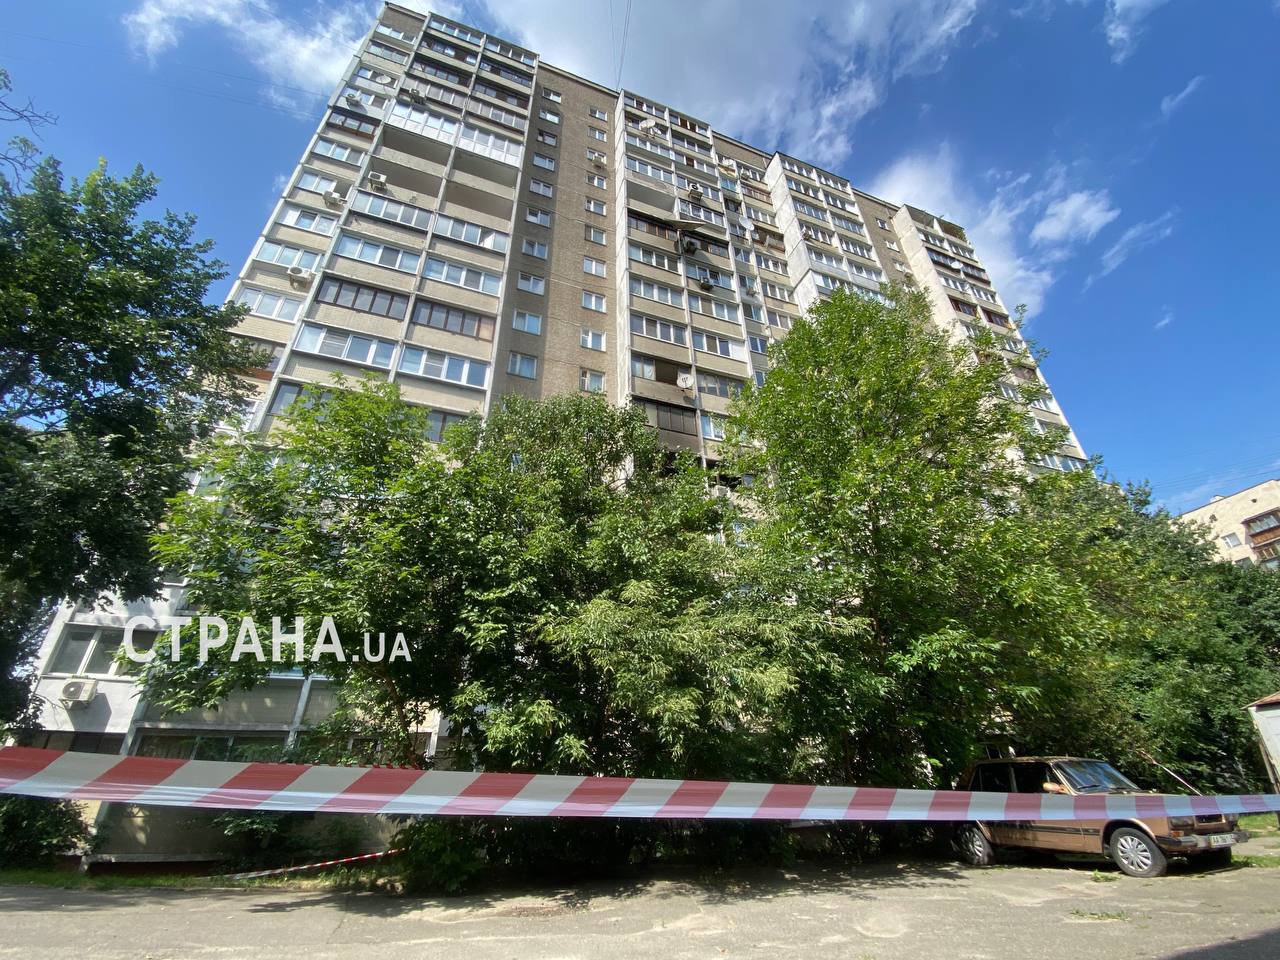 Дом в Шевченковском районе Киева, пострадавший в результате ночной атаки